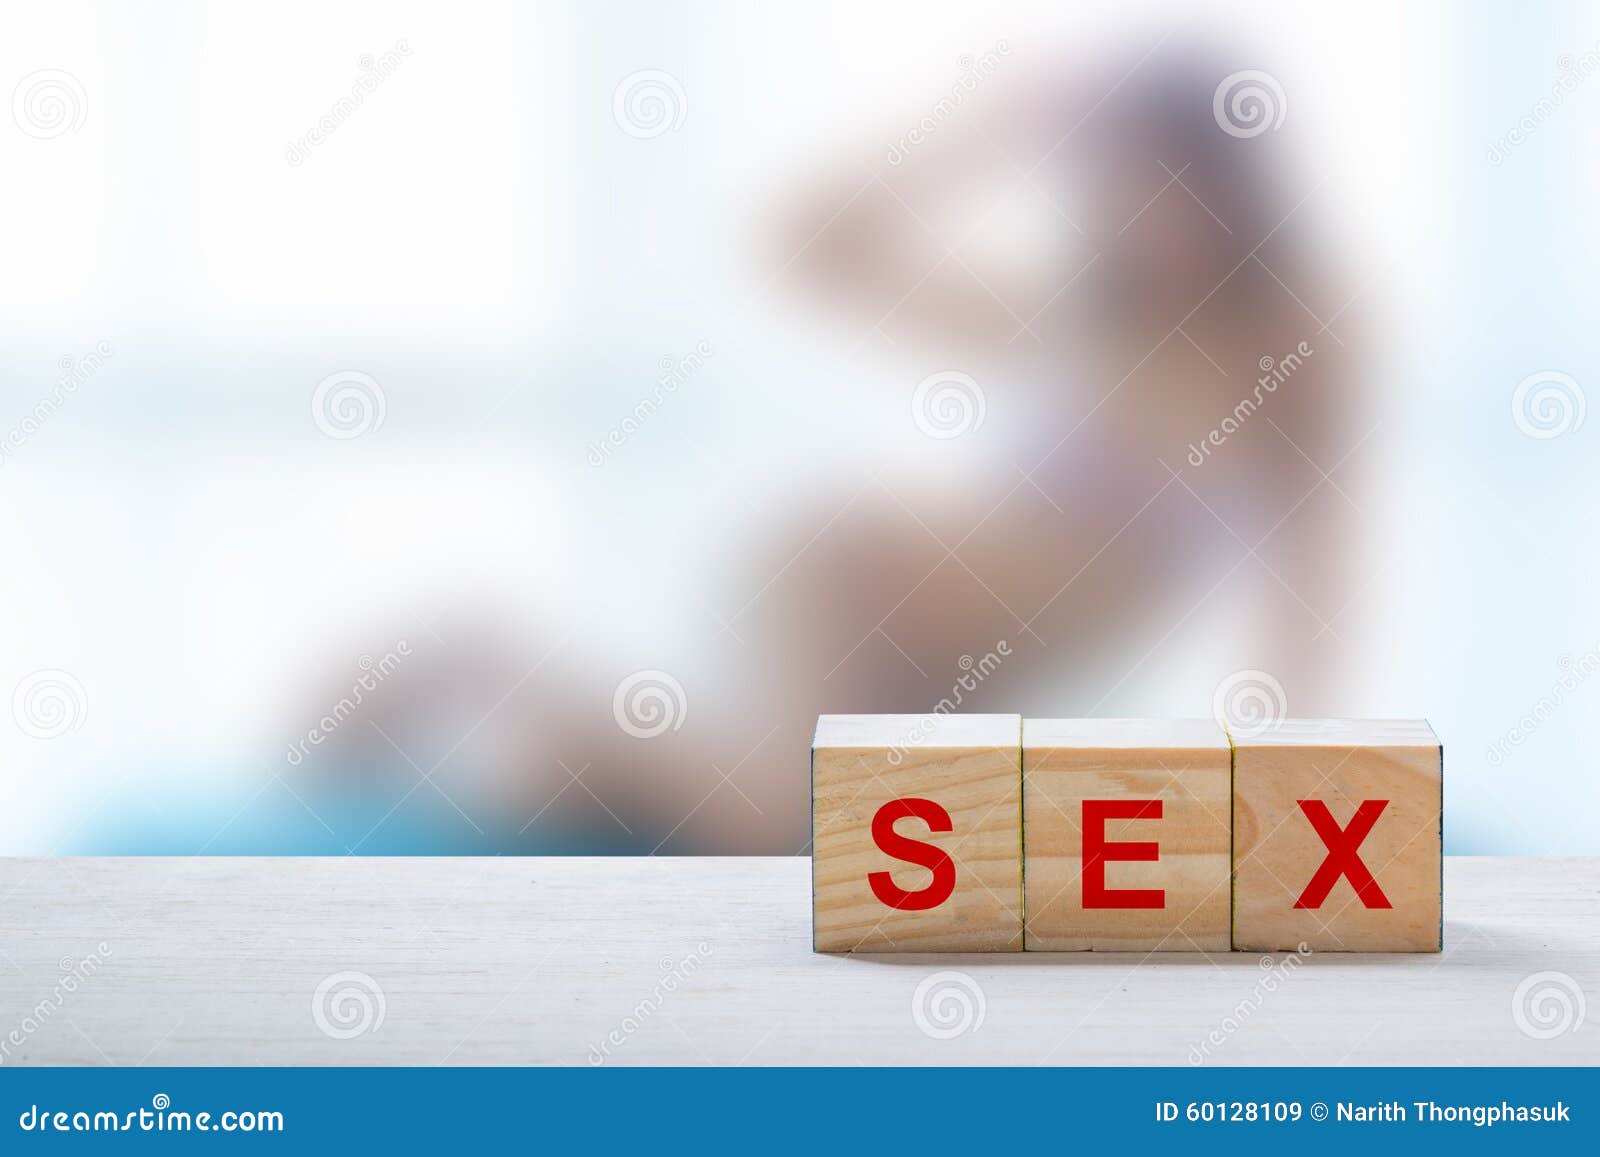 denies richards nude amateur oral cumshots Porn Photos Hd